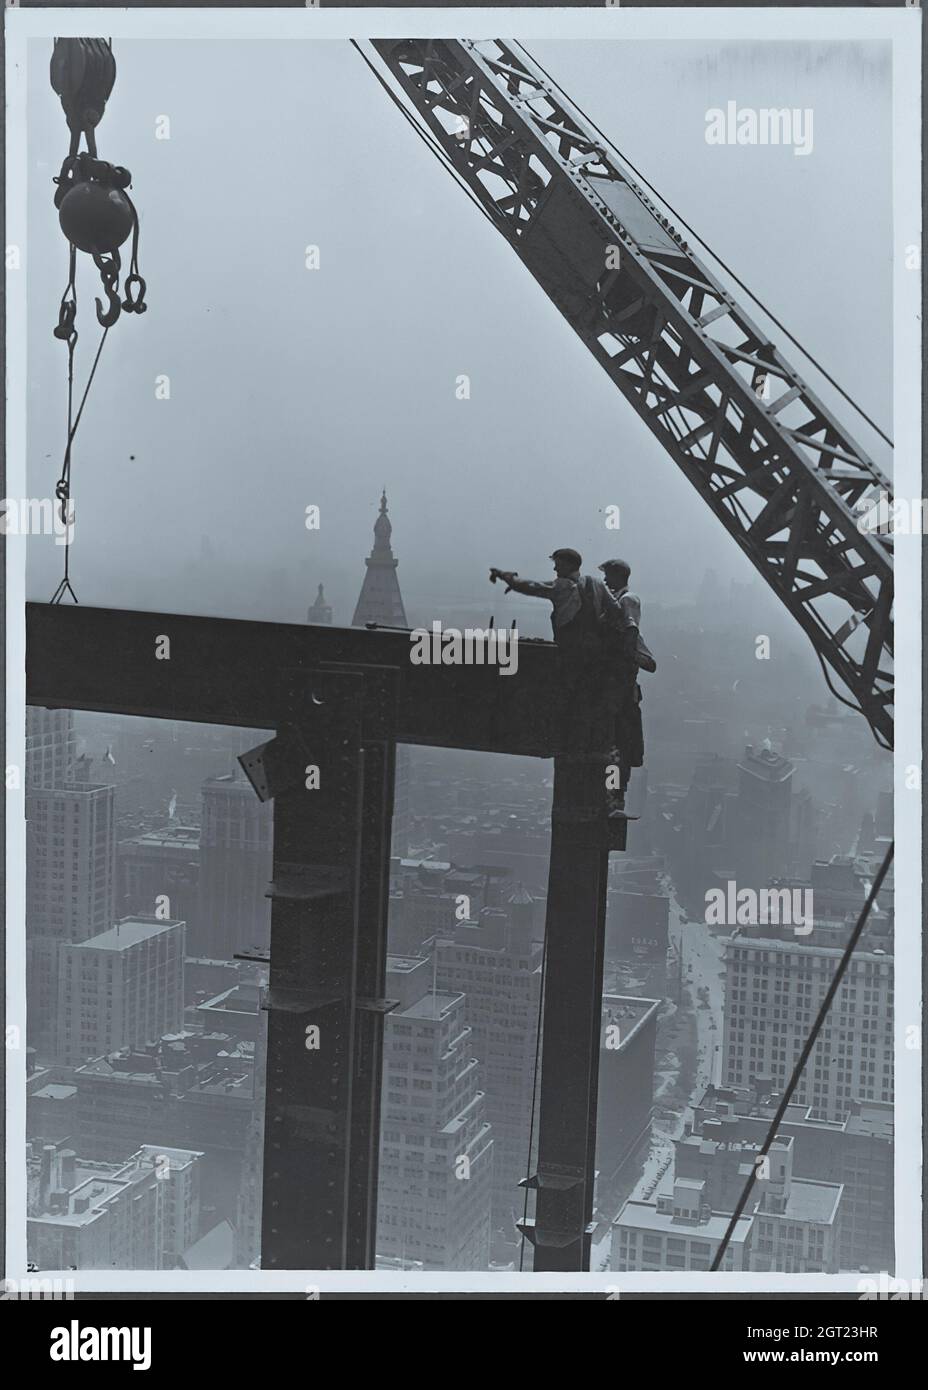 EMPIRE STATE BUILDING NY, NY 1930 - 1931. Vues générales et détaillées de l'Empire State Building en construction montrant les travailleurs qui effectuent diverses tâches, notamment le positionnement, le soudage et le rivetage de l'acier, les matériaux et fournitures de levage, ainsi que l'exploitation et la réparation de machines. Il y a aussi des vues panoramiques sur le centre-ville de Manhattan montrant d'autres bâtiments en construction. Photographies de : Hine, Lewis Wickes, 1874-1940 . Banque D'Images